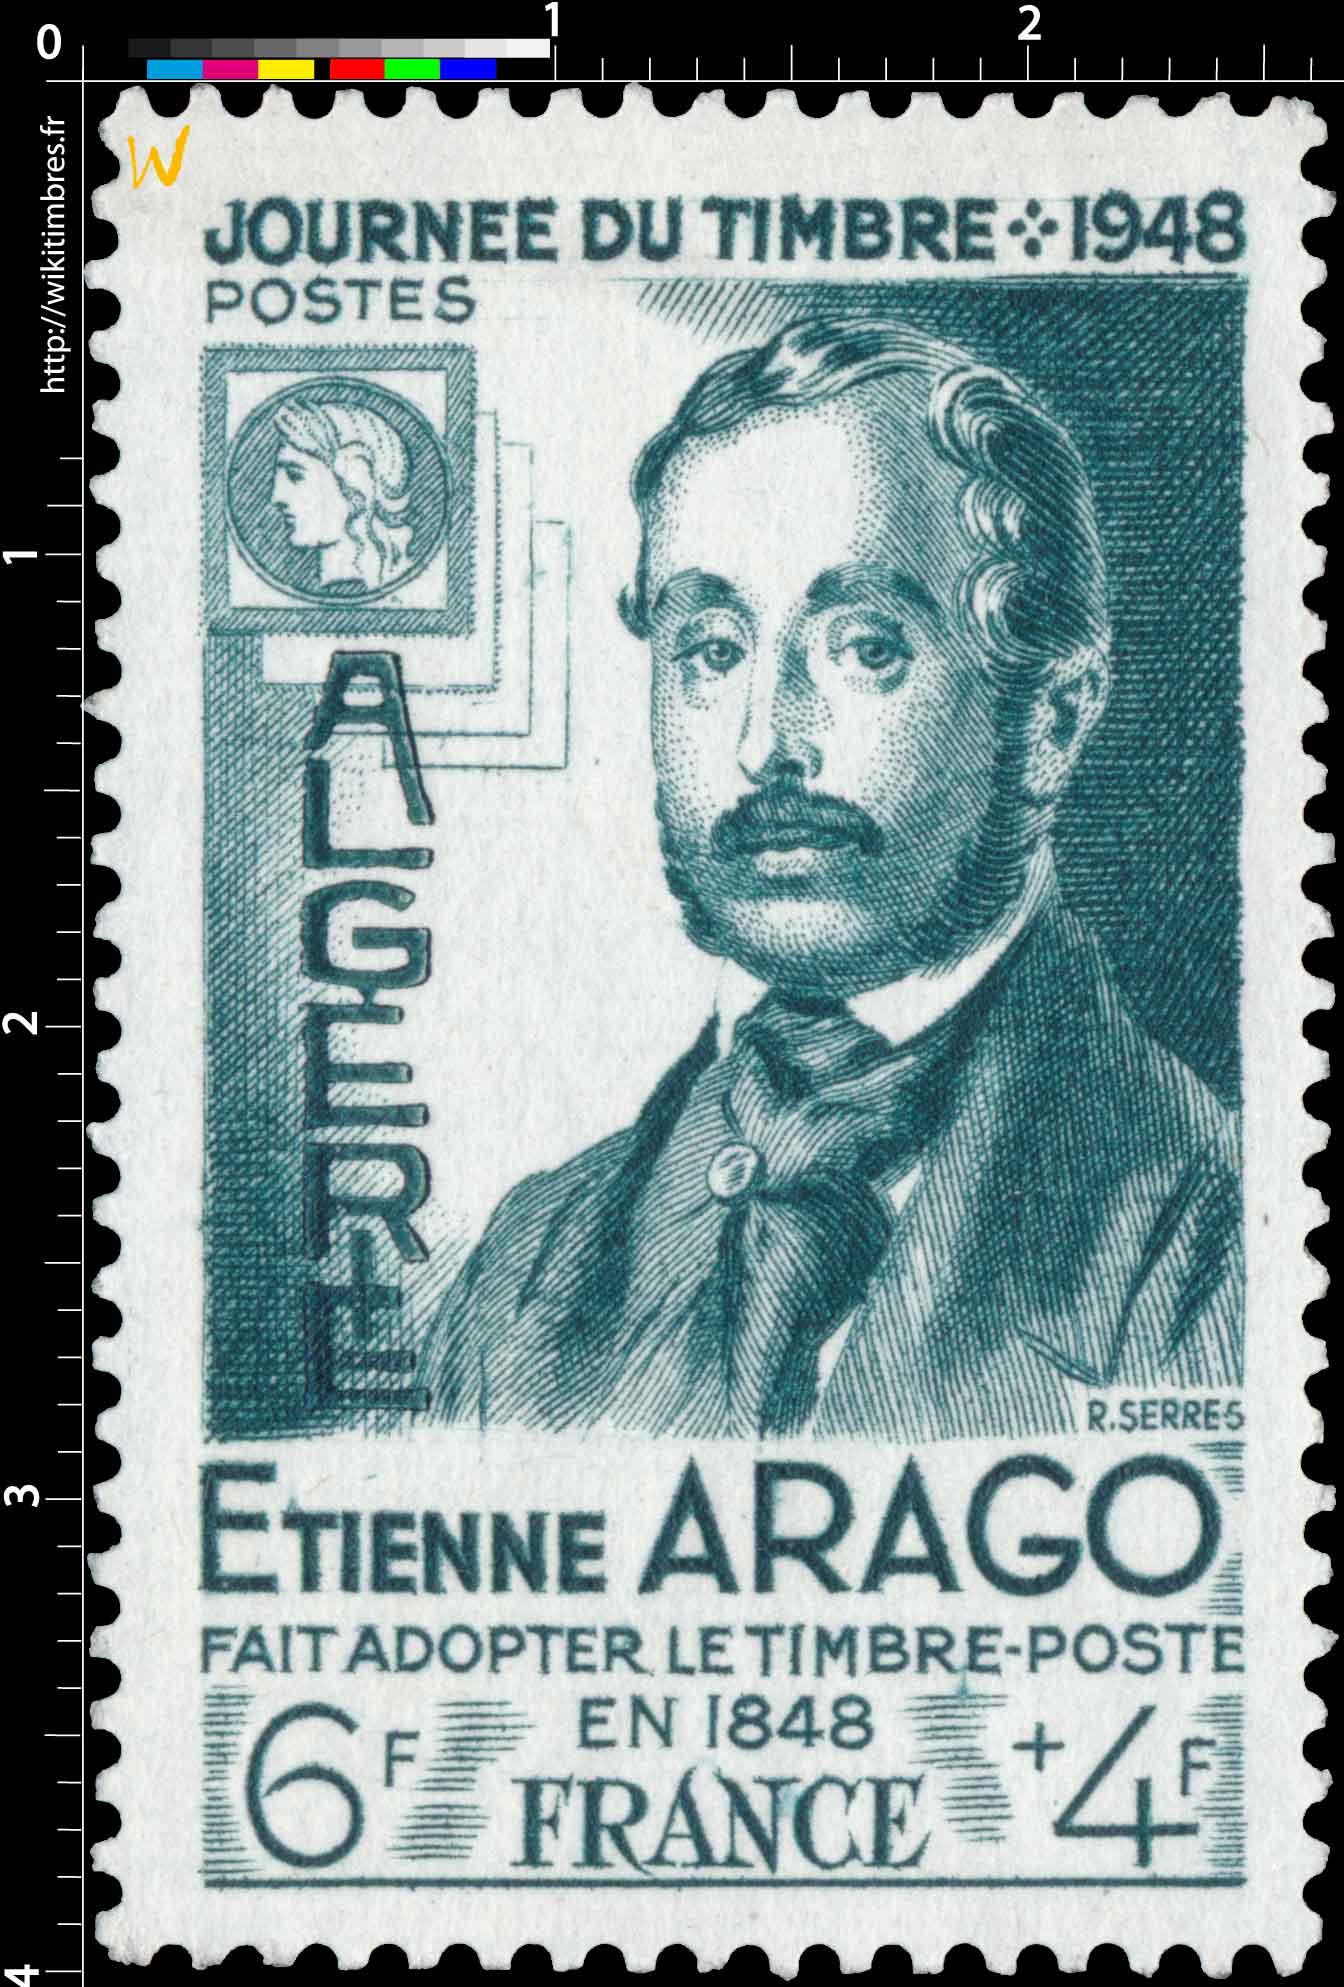 Algérie - Journée du timbre E. Arago fait adopter le timbre poste en 1848 